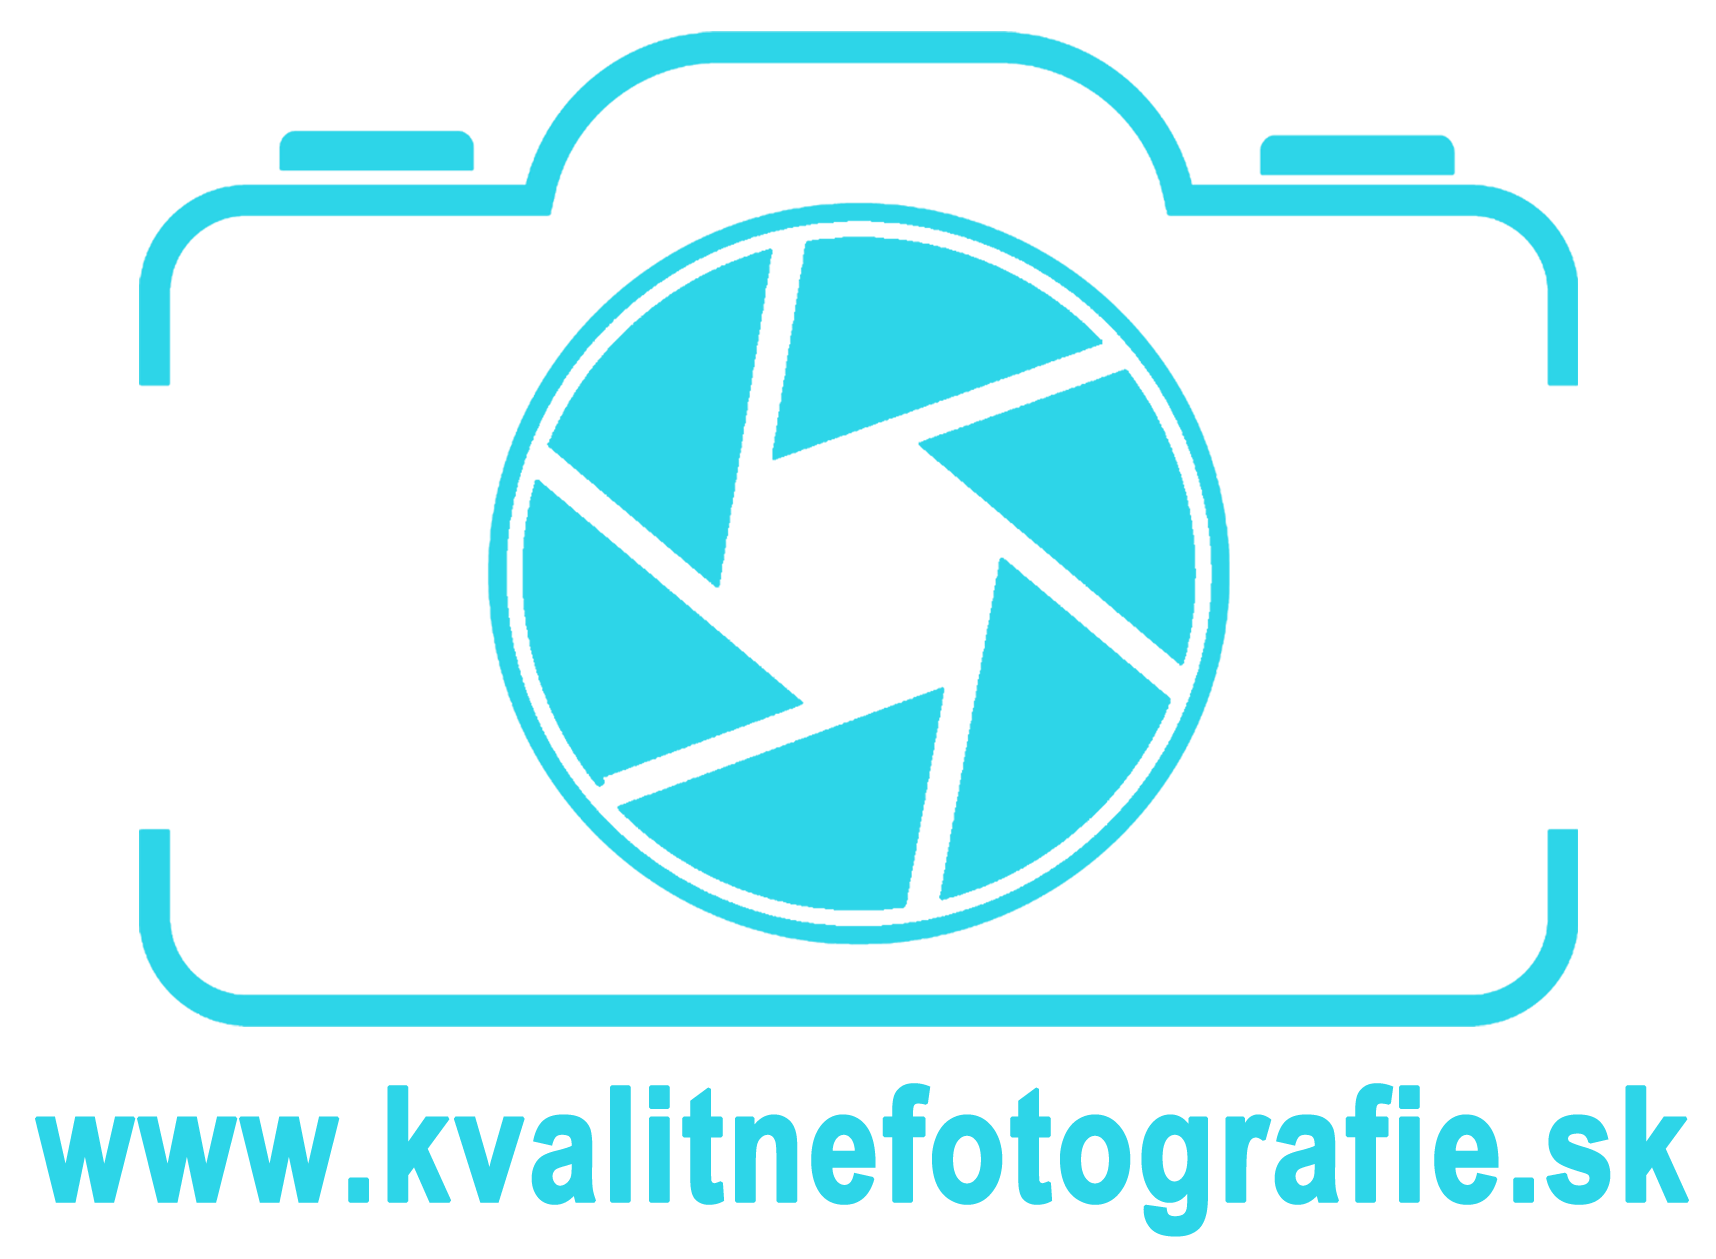 www.kvalitnefotografie.sk